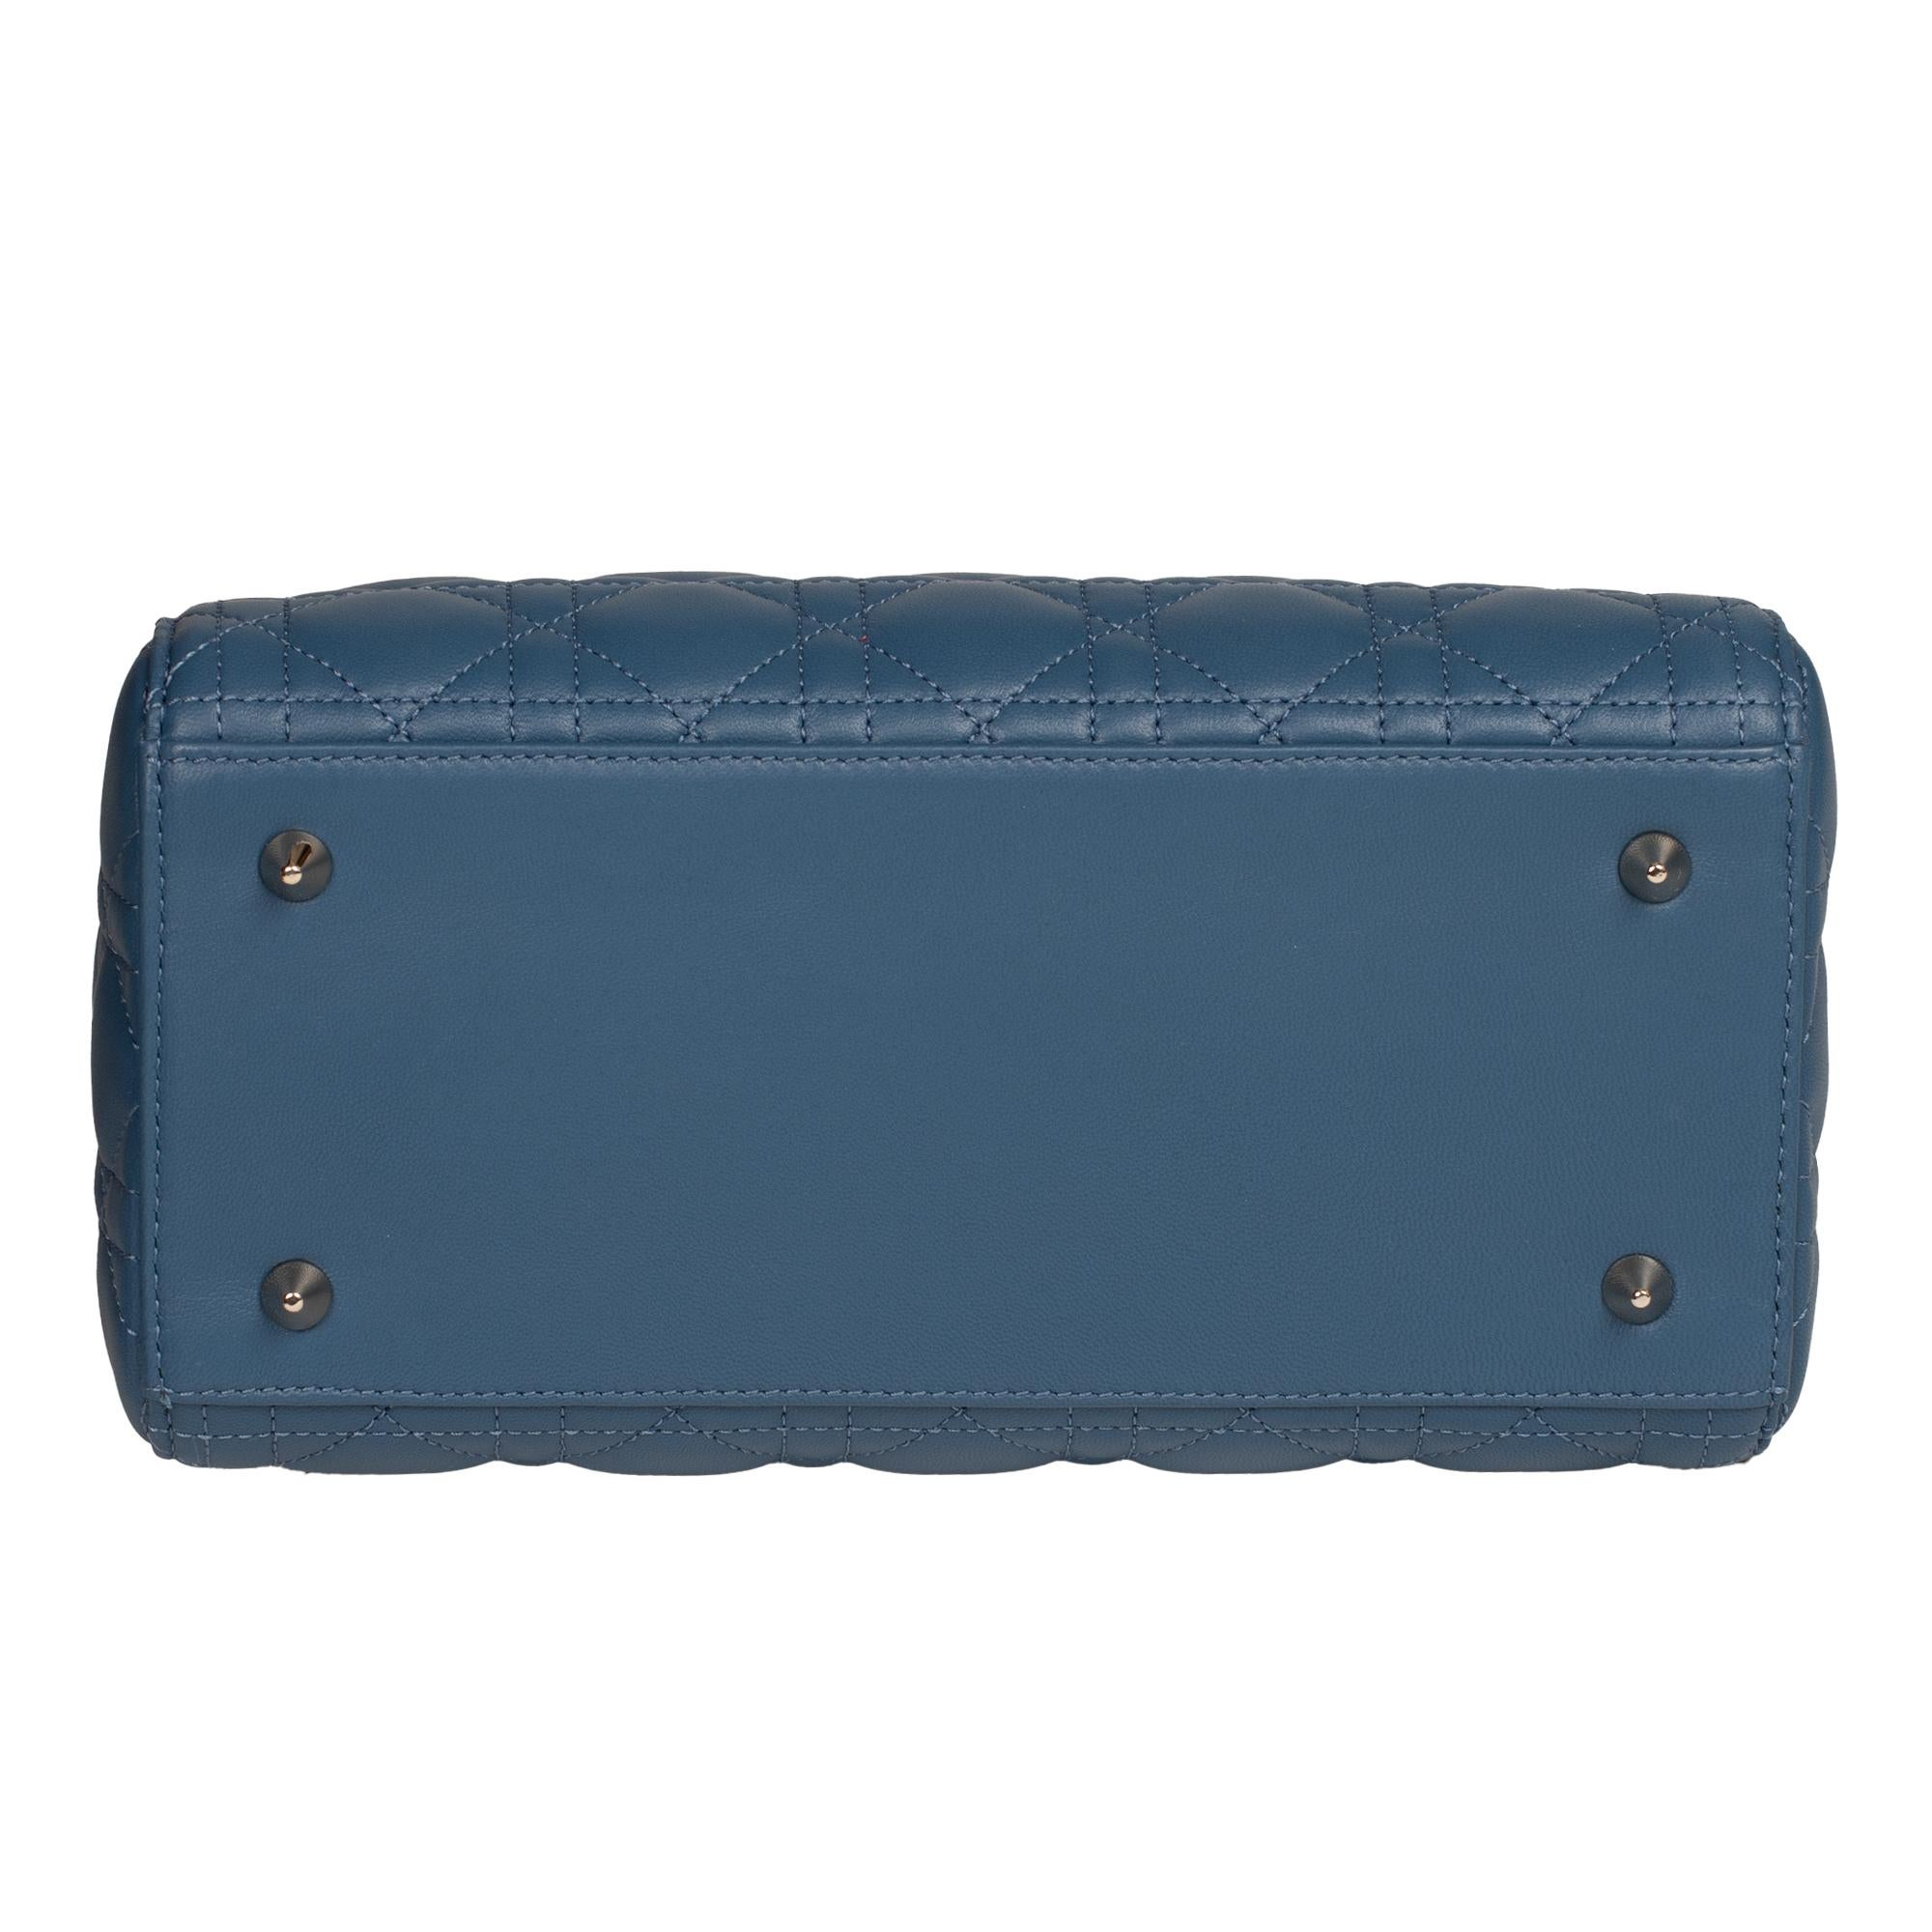  Christian Dior Lady Dior MM (Medium size) handbag in blue cannage leather, PHW 4